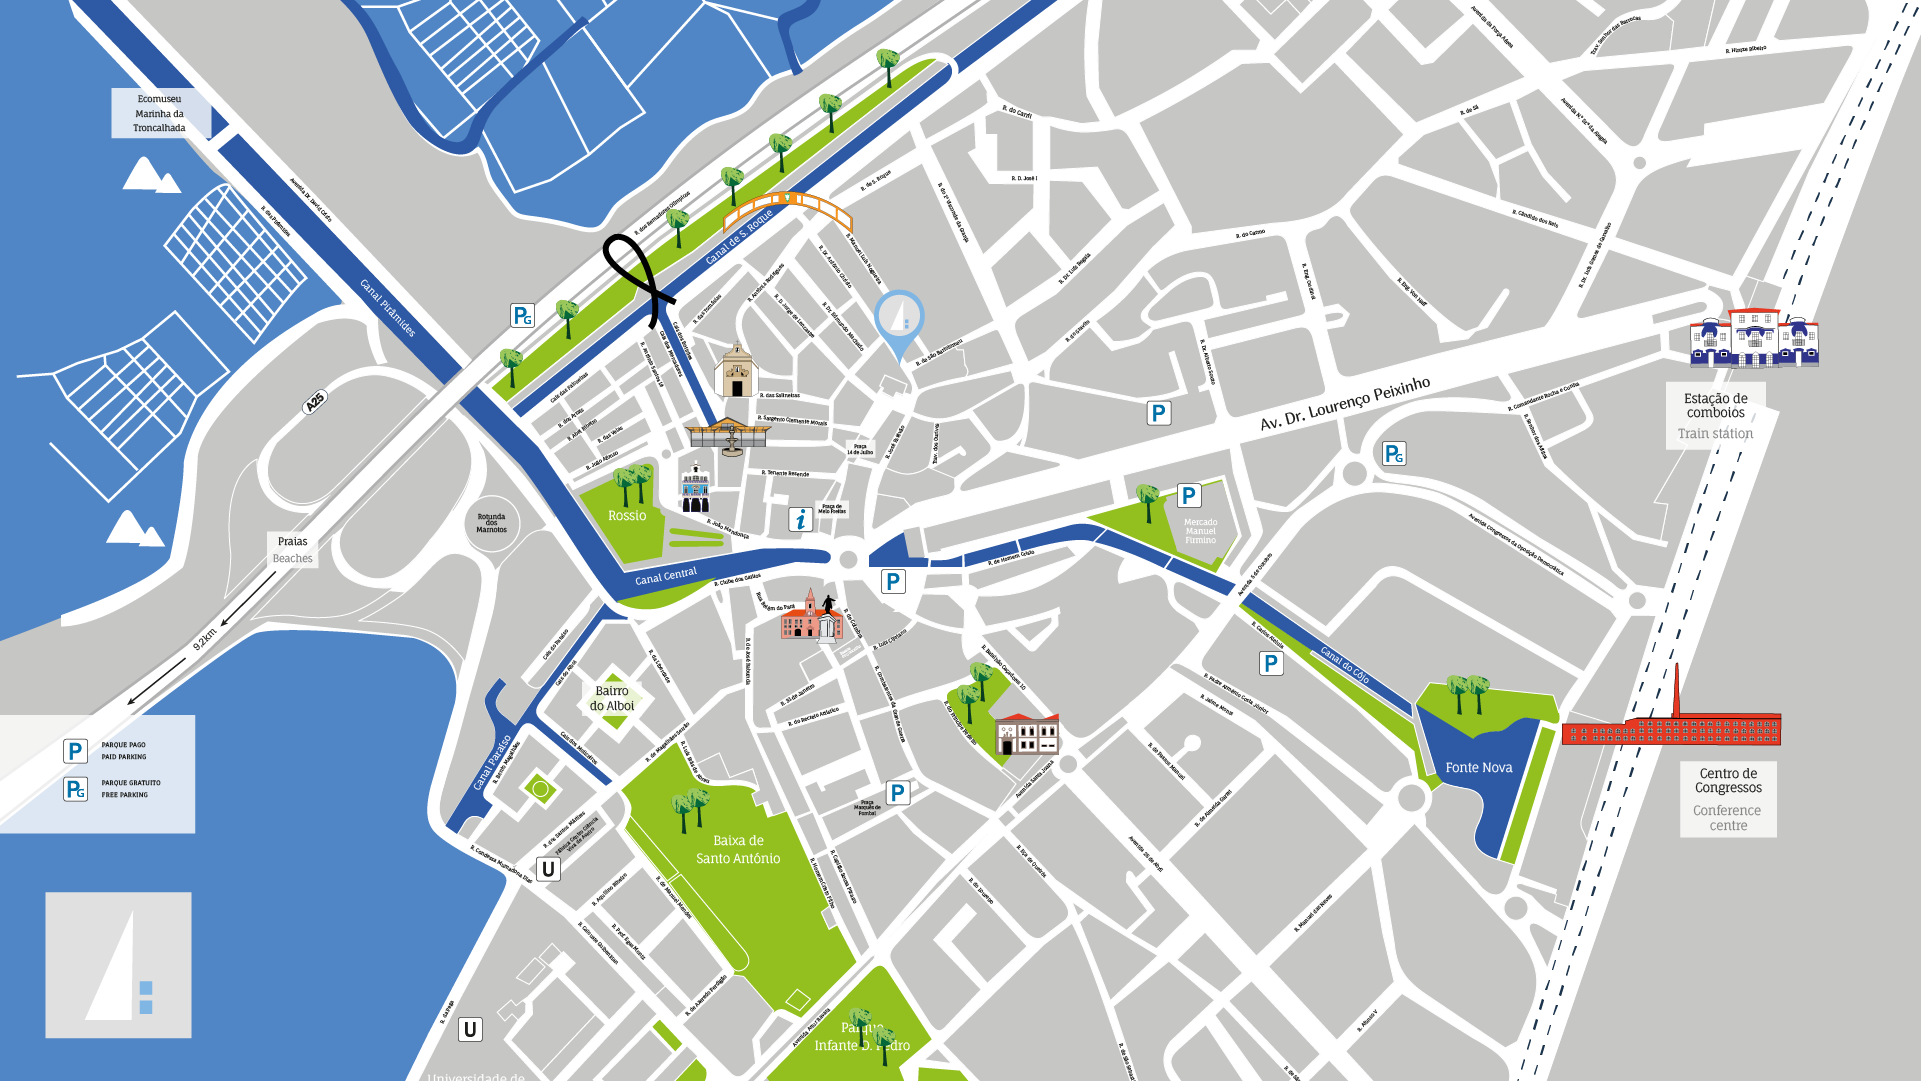 Experiment Aveiro - Mapa Turístico Cidade de Aveiro